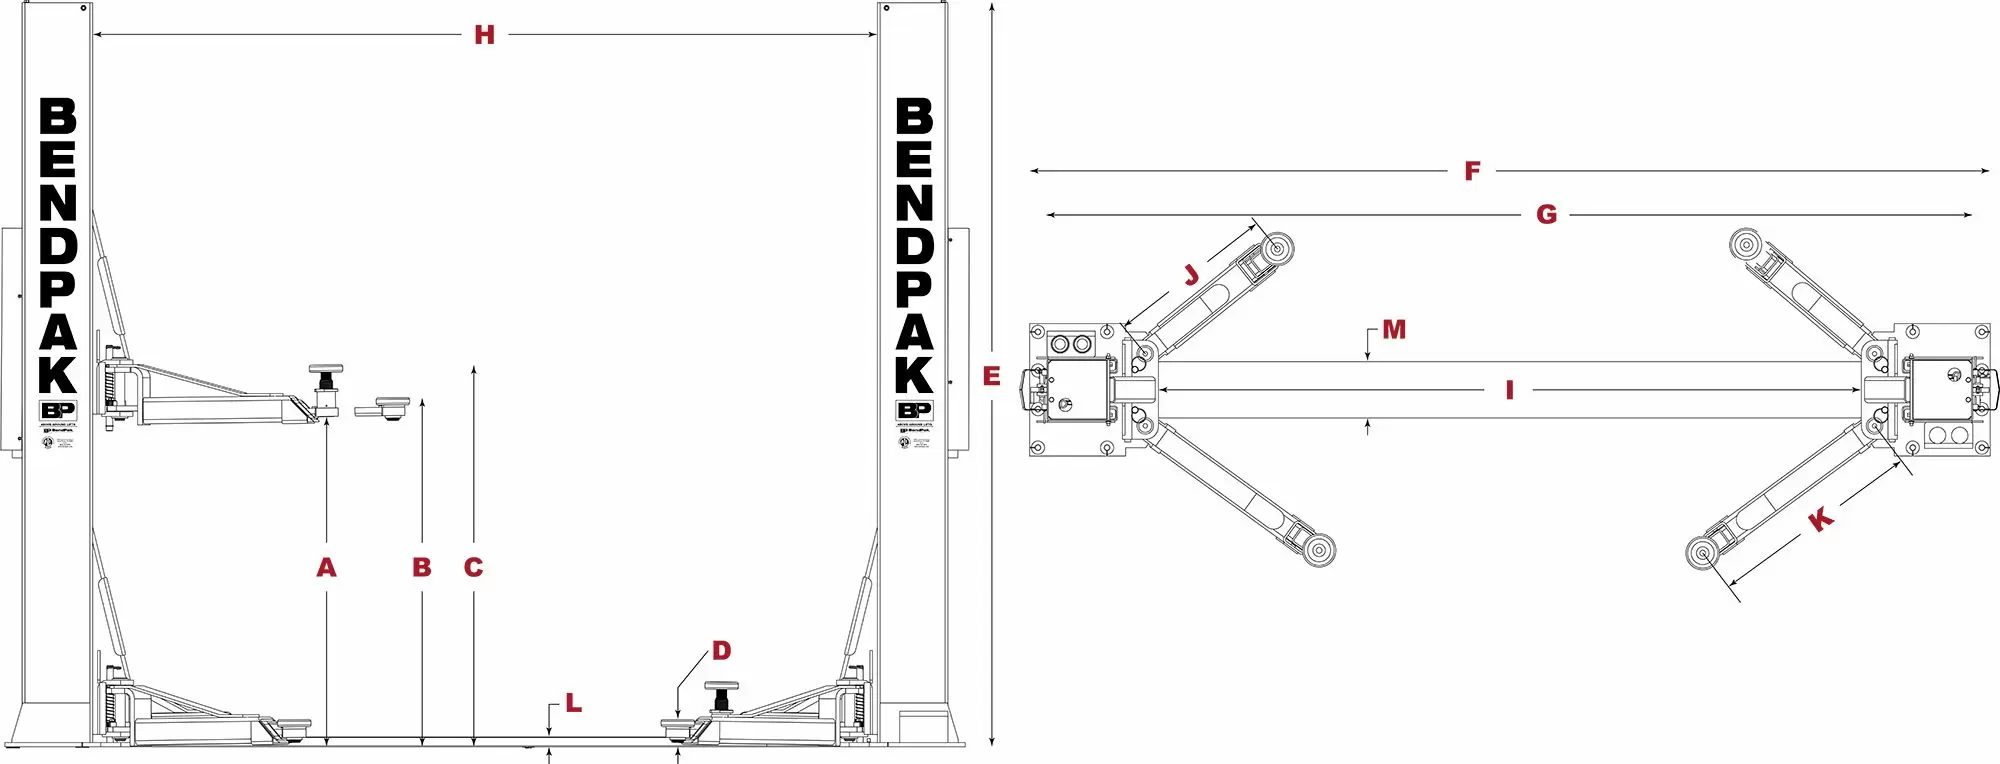 BendPak-Floorplate-Two-Post-Lifts-Specifications-Diagram_jpg-1.webp